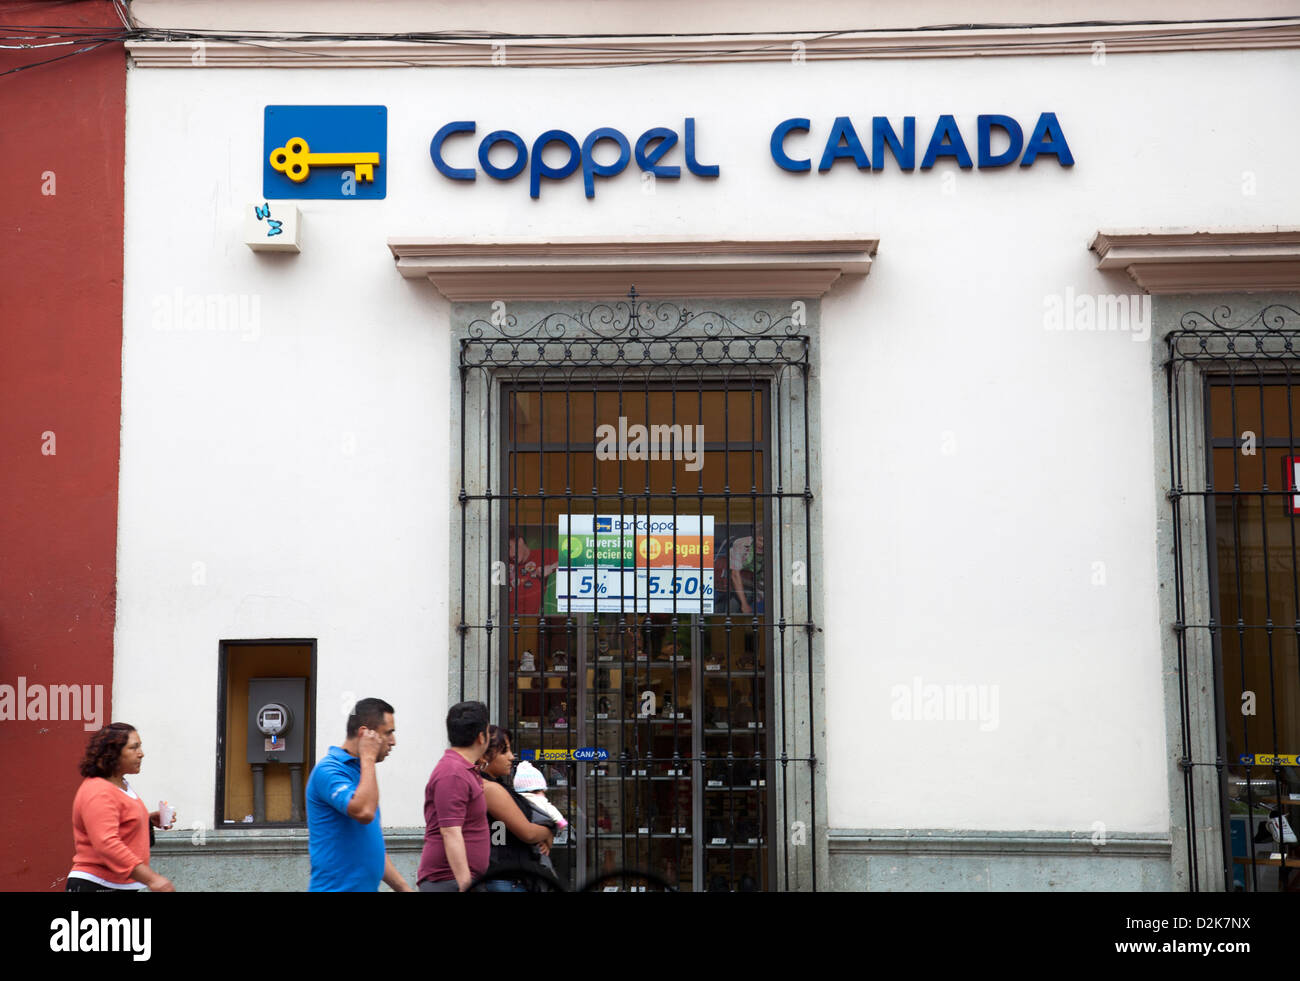 Coppel Canada Store in Oaxaca - Mexico Stock Photo - Alamy